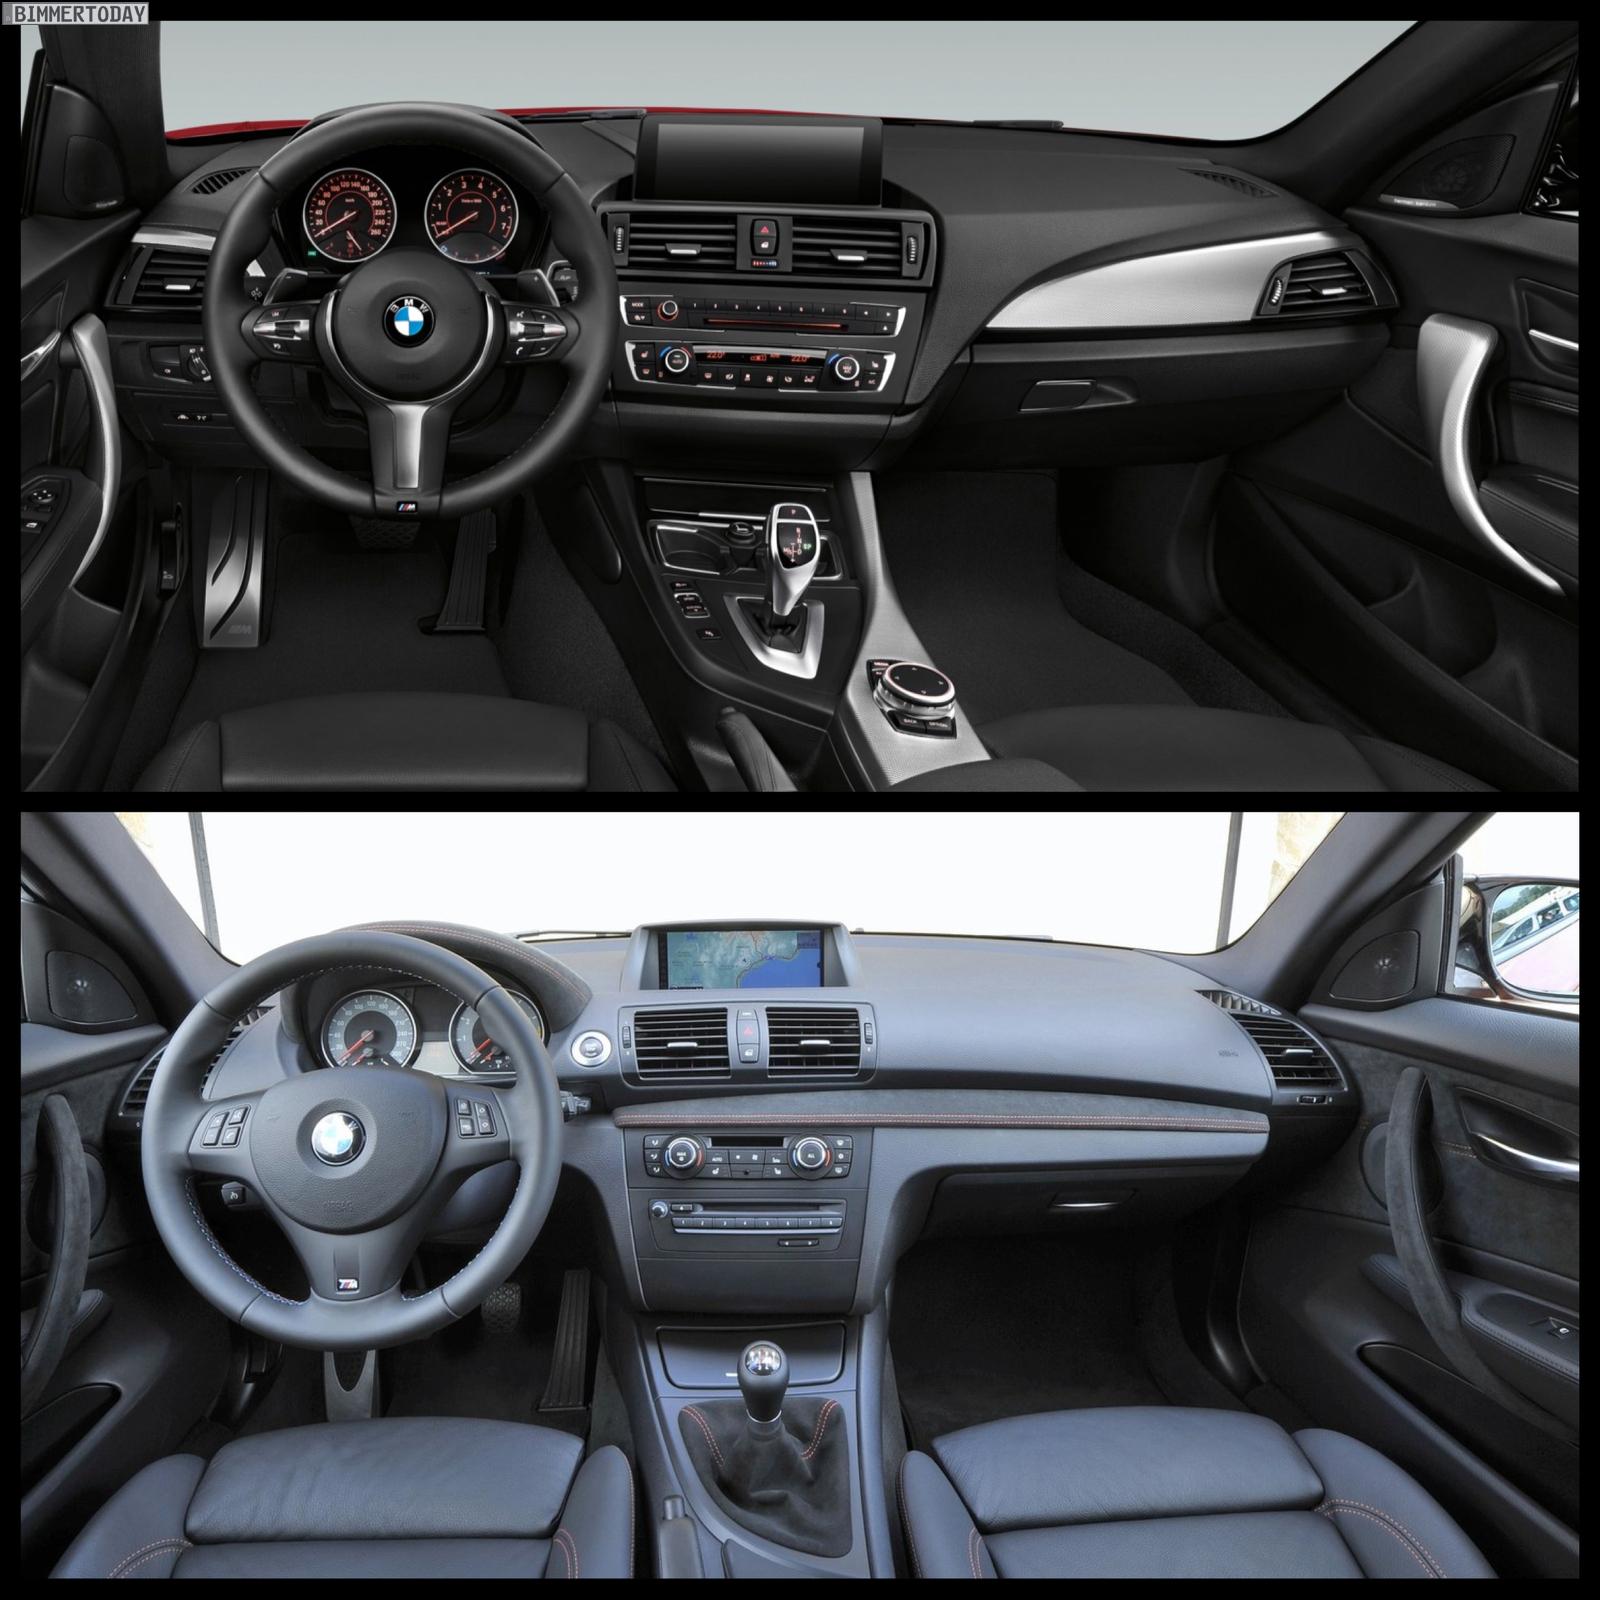 Bild-Vergleich-BMW-2er-F22-M235i-1er-M-Coupe-E82-05.jpg